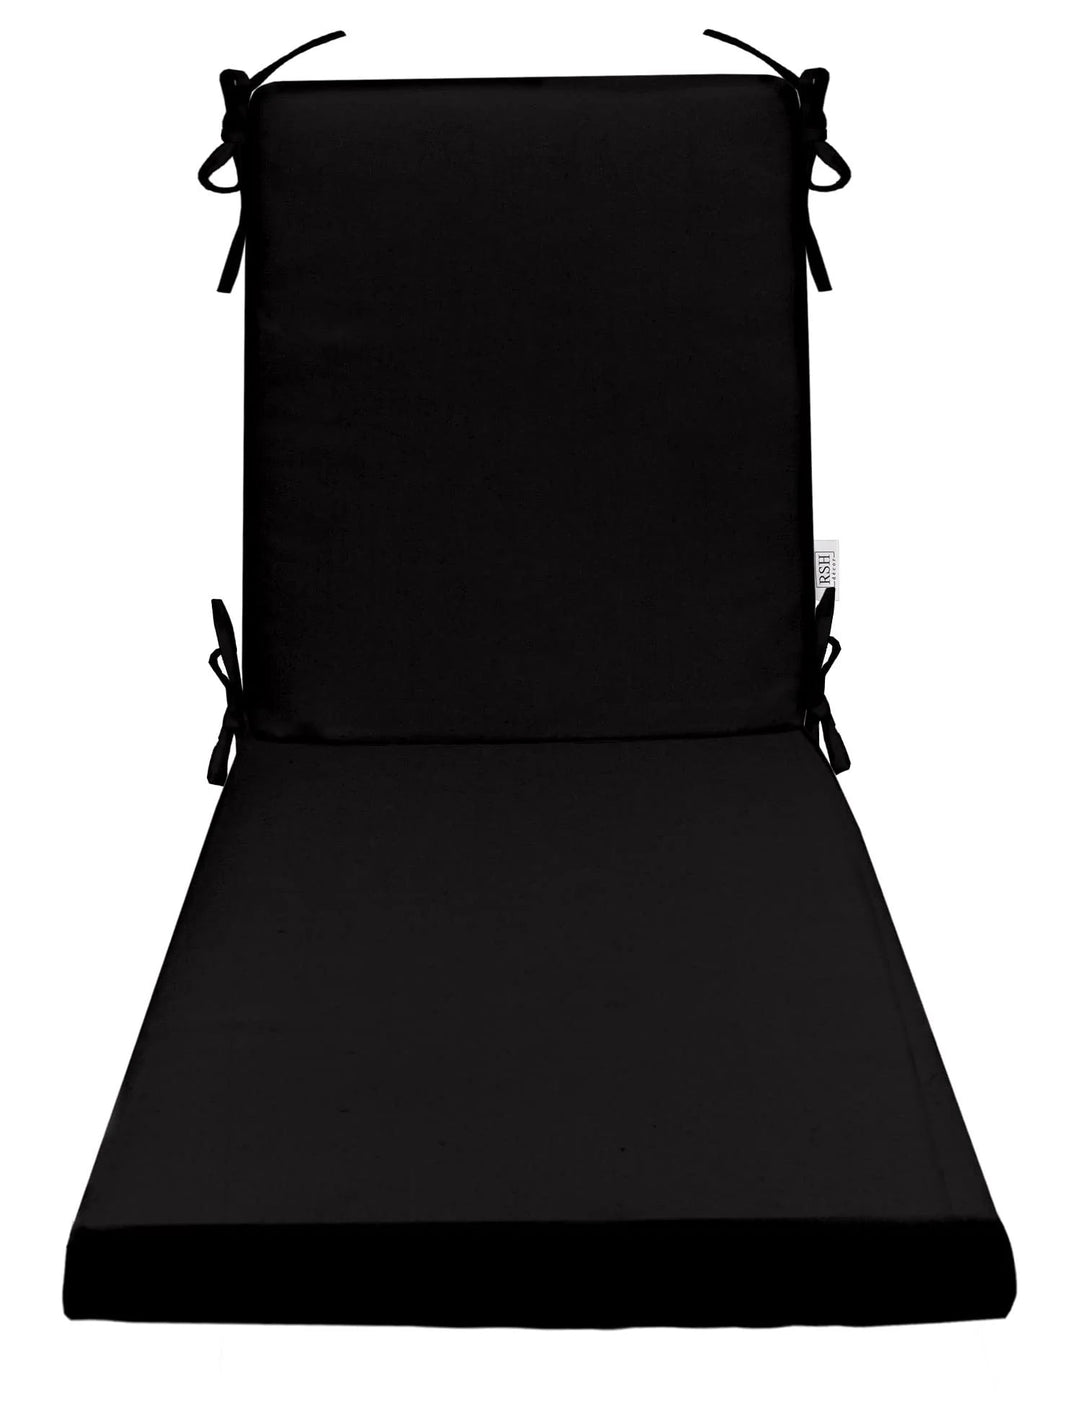 Chaise Lounge Chair Cushion, Foam, 72" H x 22" W", Sunbrella Solid, Black - RSH Decor